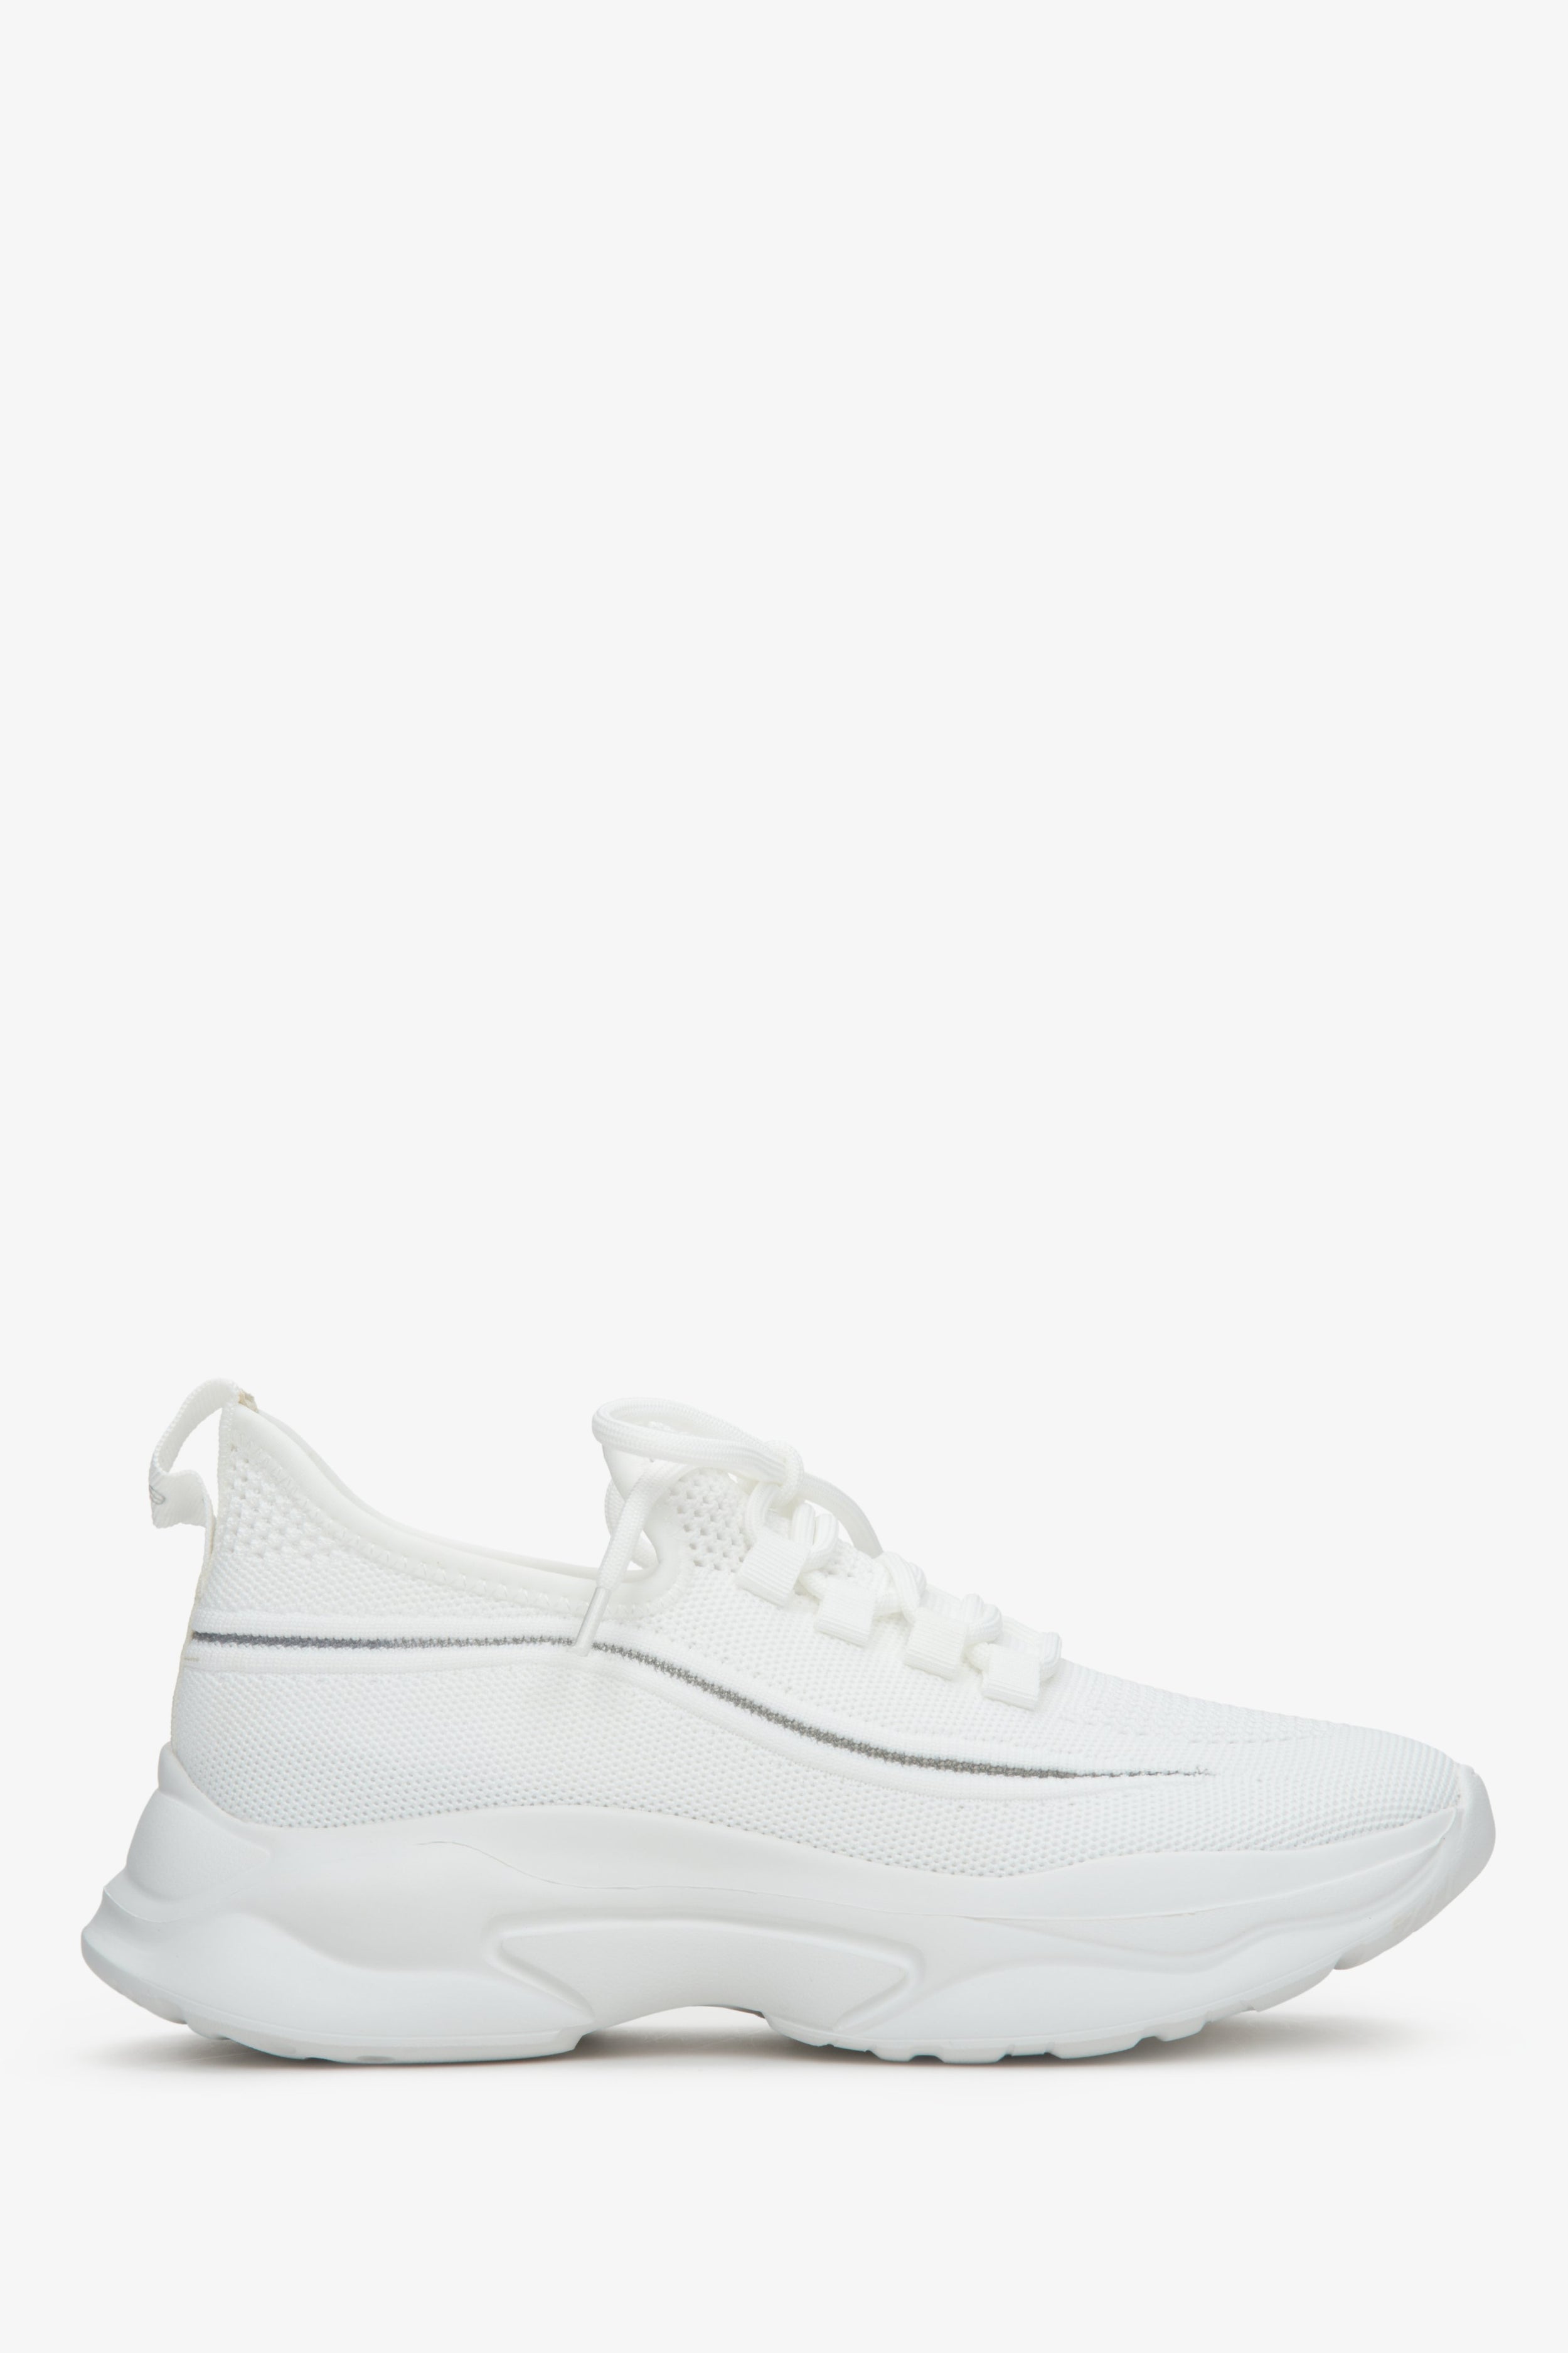 Estro: Białe niskie sneakersy damskie z siateczki na elastycznej podeszwie